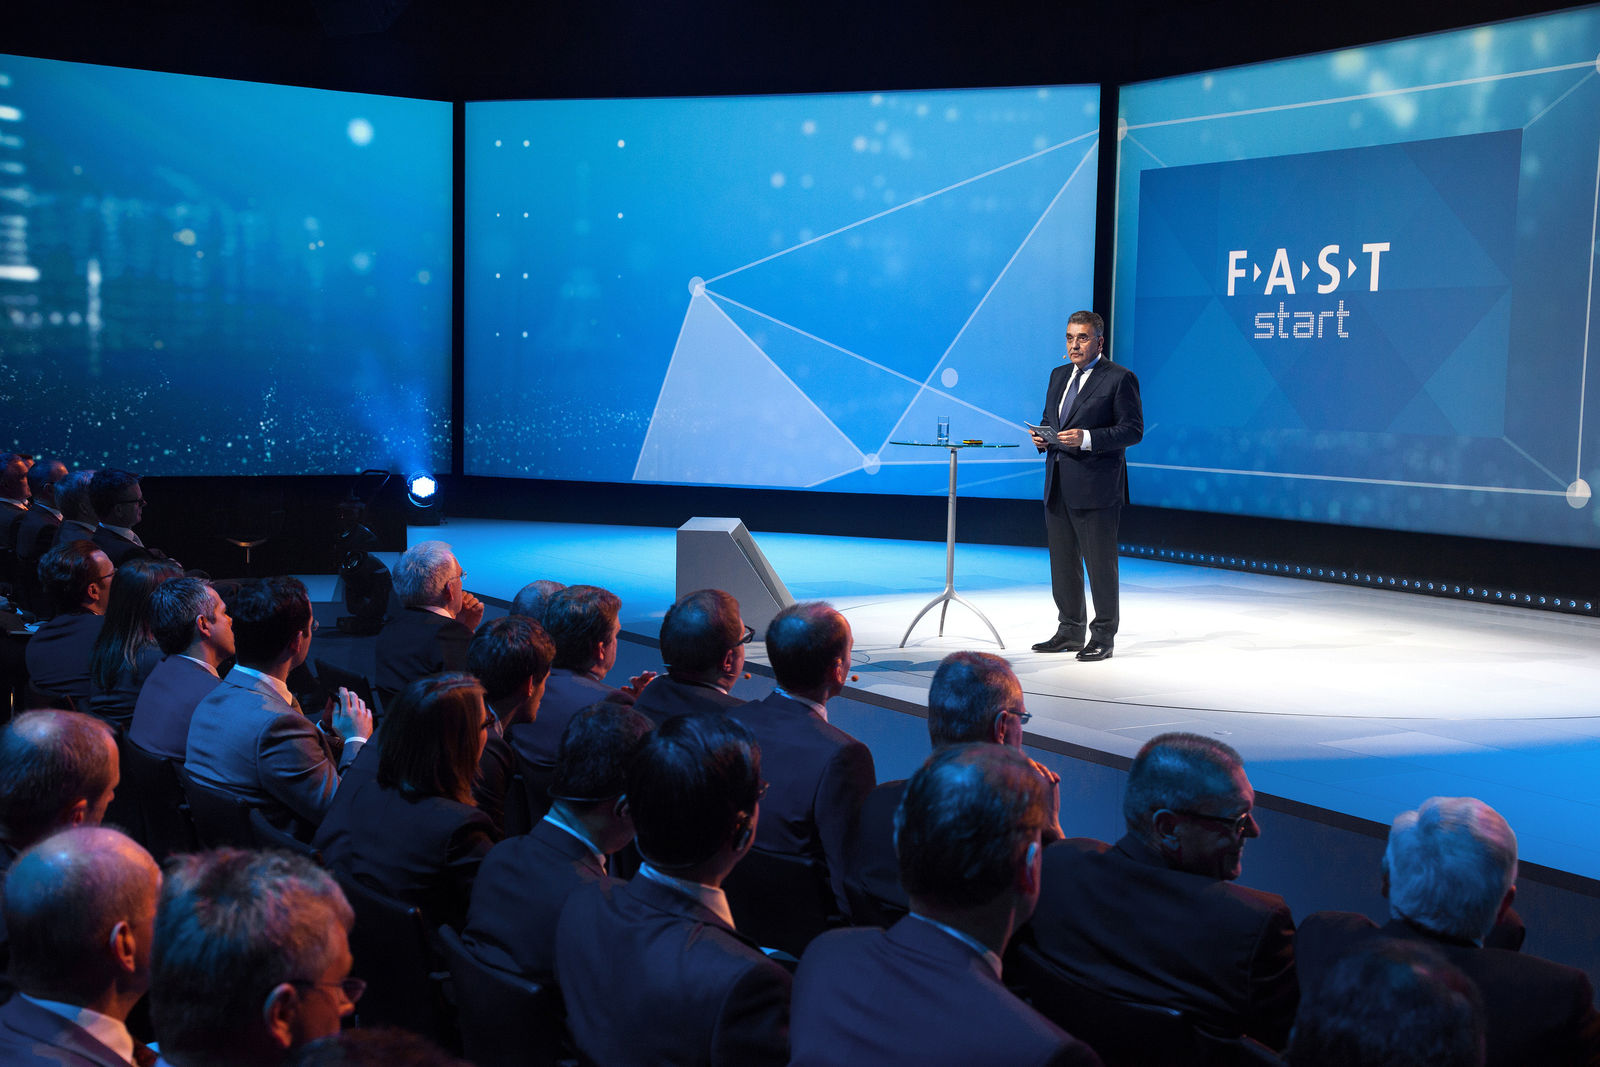 Initiative „Volkswagen FAST": Volkswagen Konzern definiert Zusammenarbeit mit Lieferanten neu